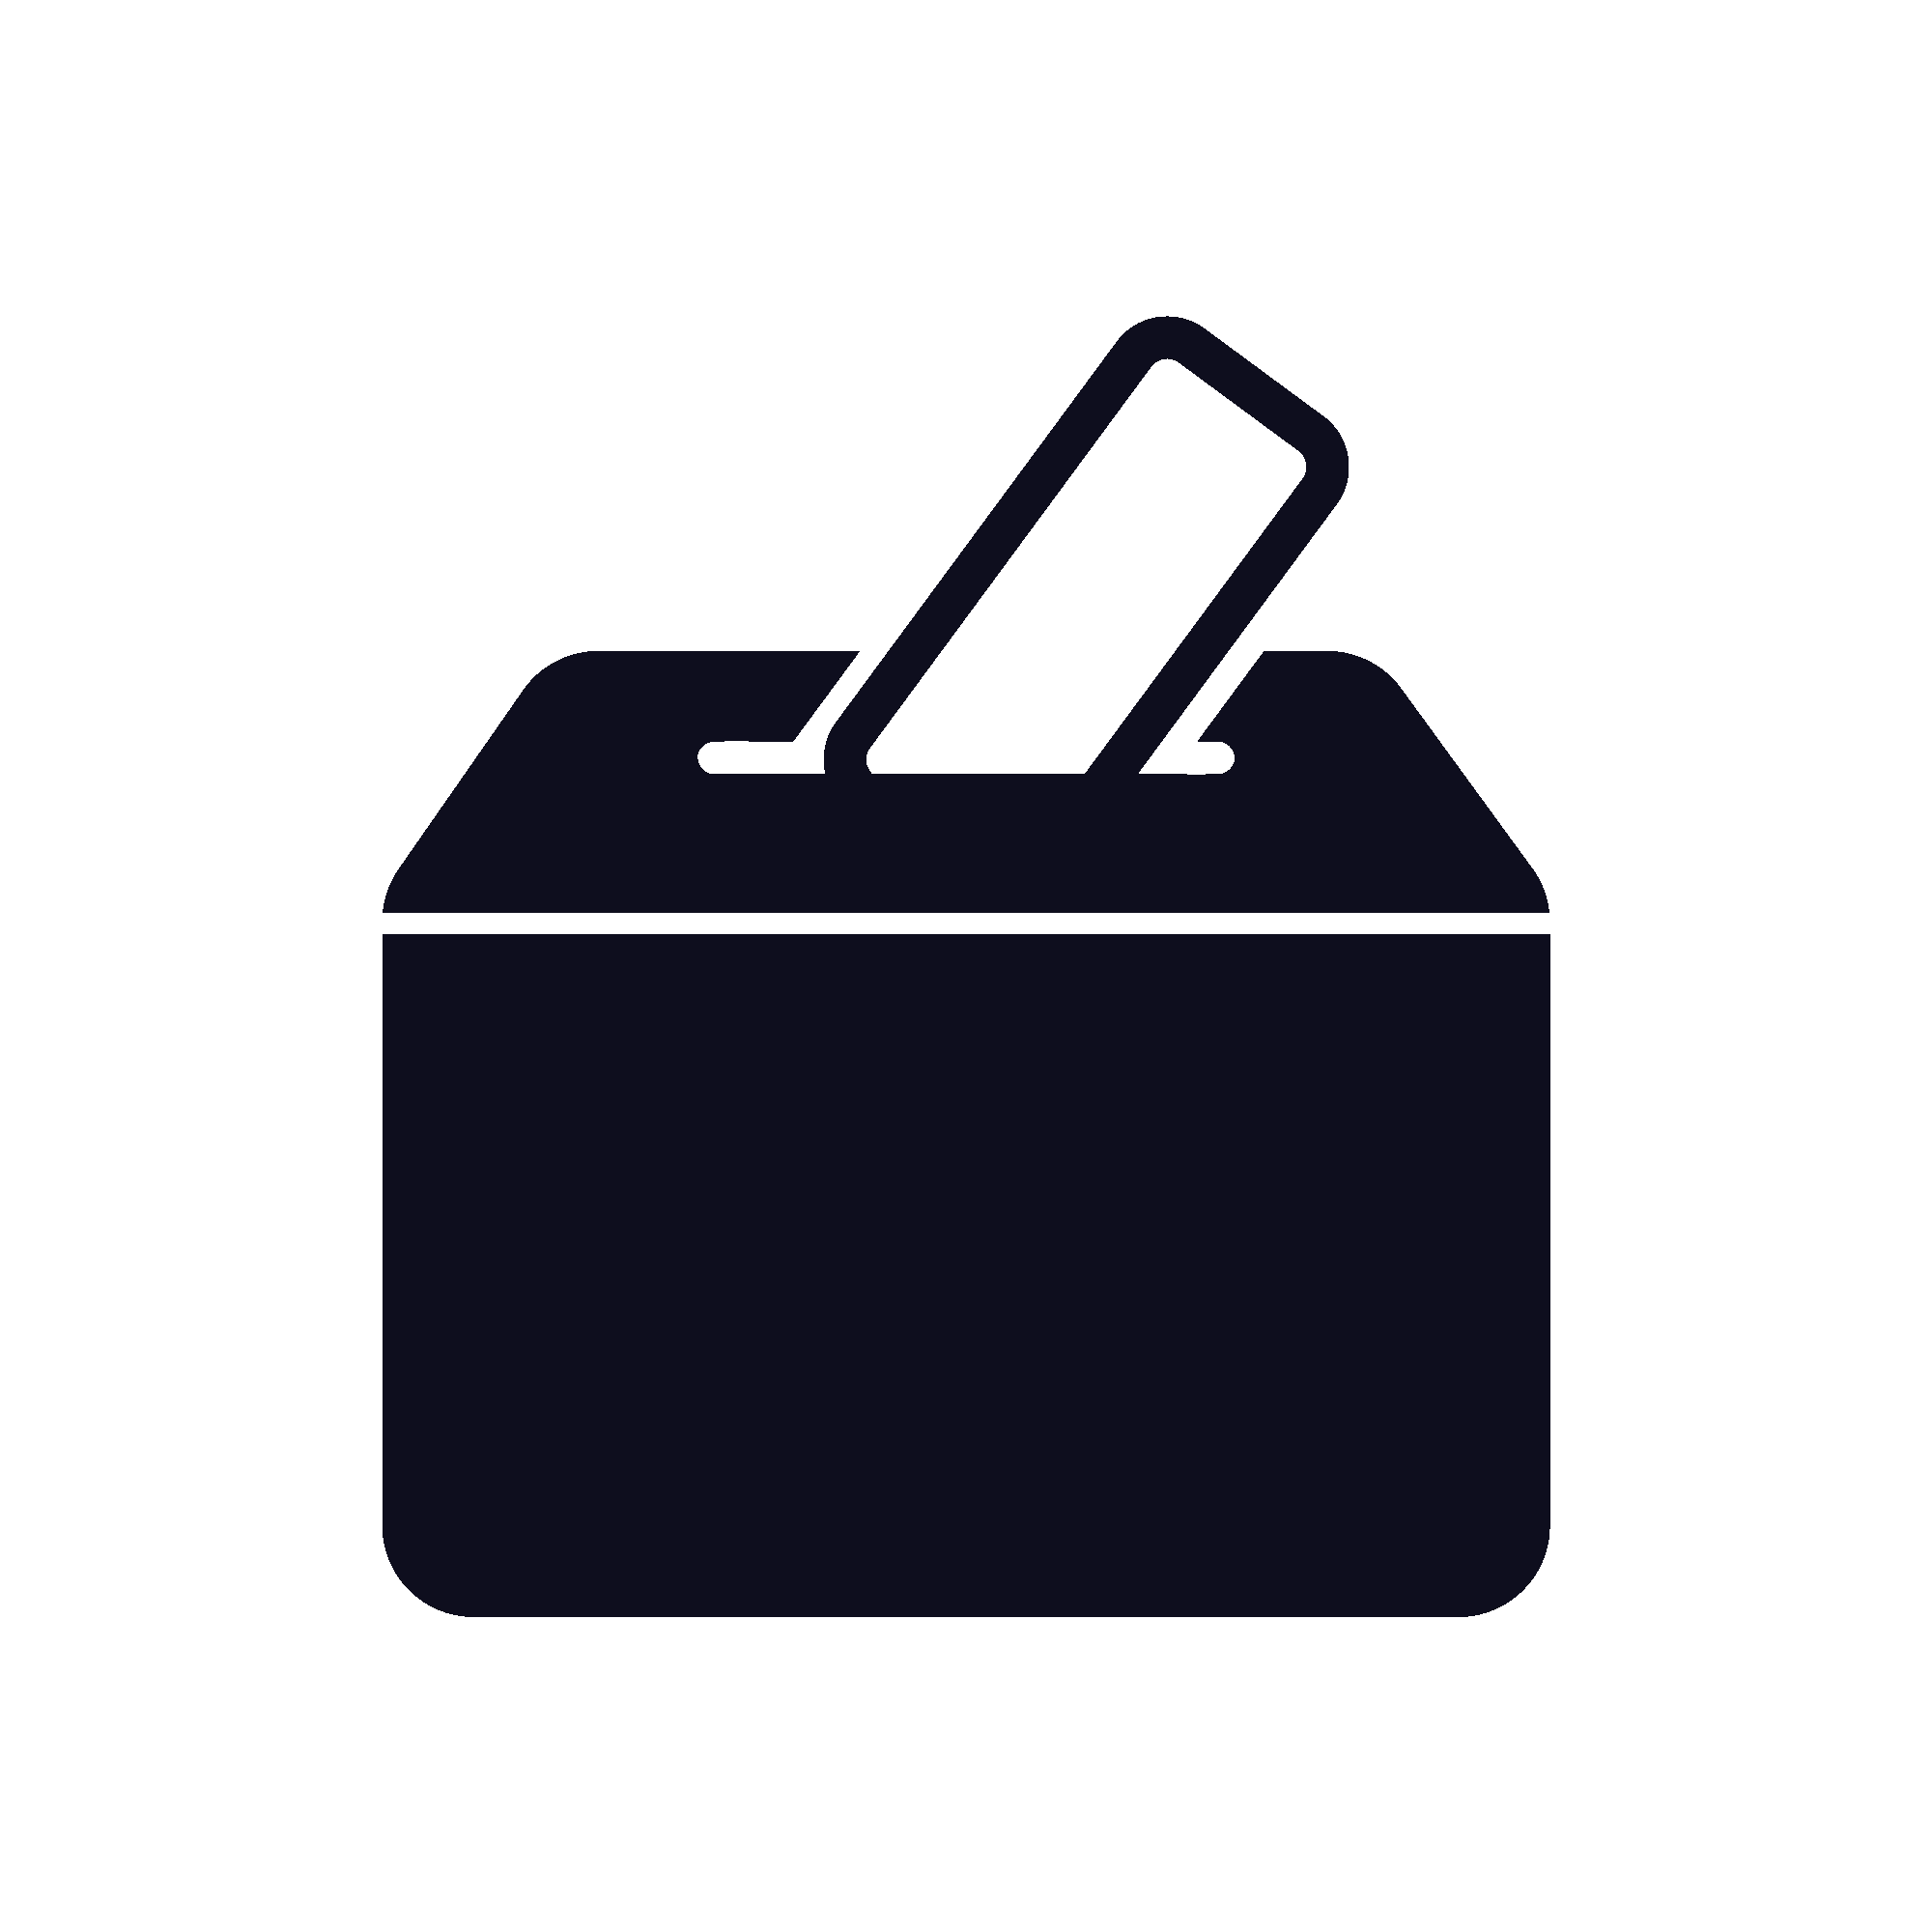 An icon of a ballot box